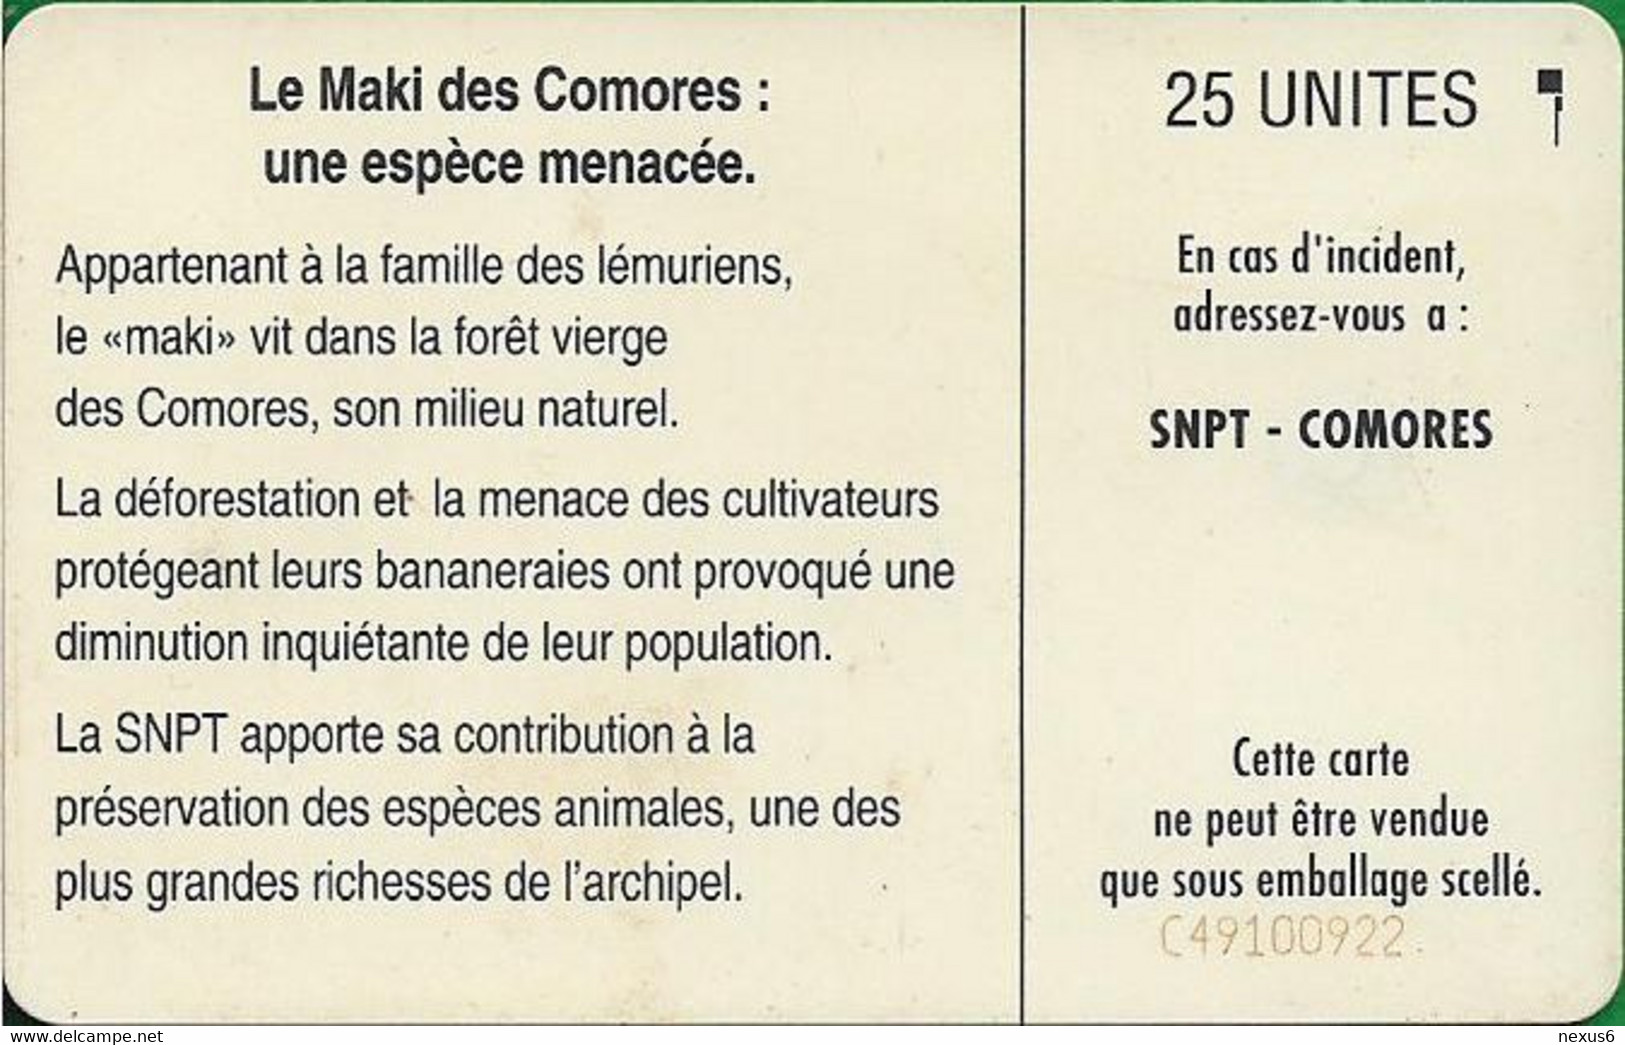 Comoros - S.N.P.T. - Maki (Cn. C49100922), SC5, 1994, 25Units, Used - Comoros